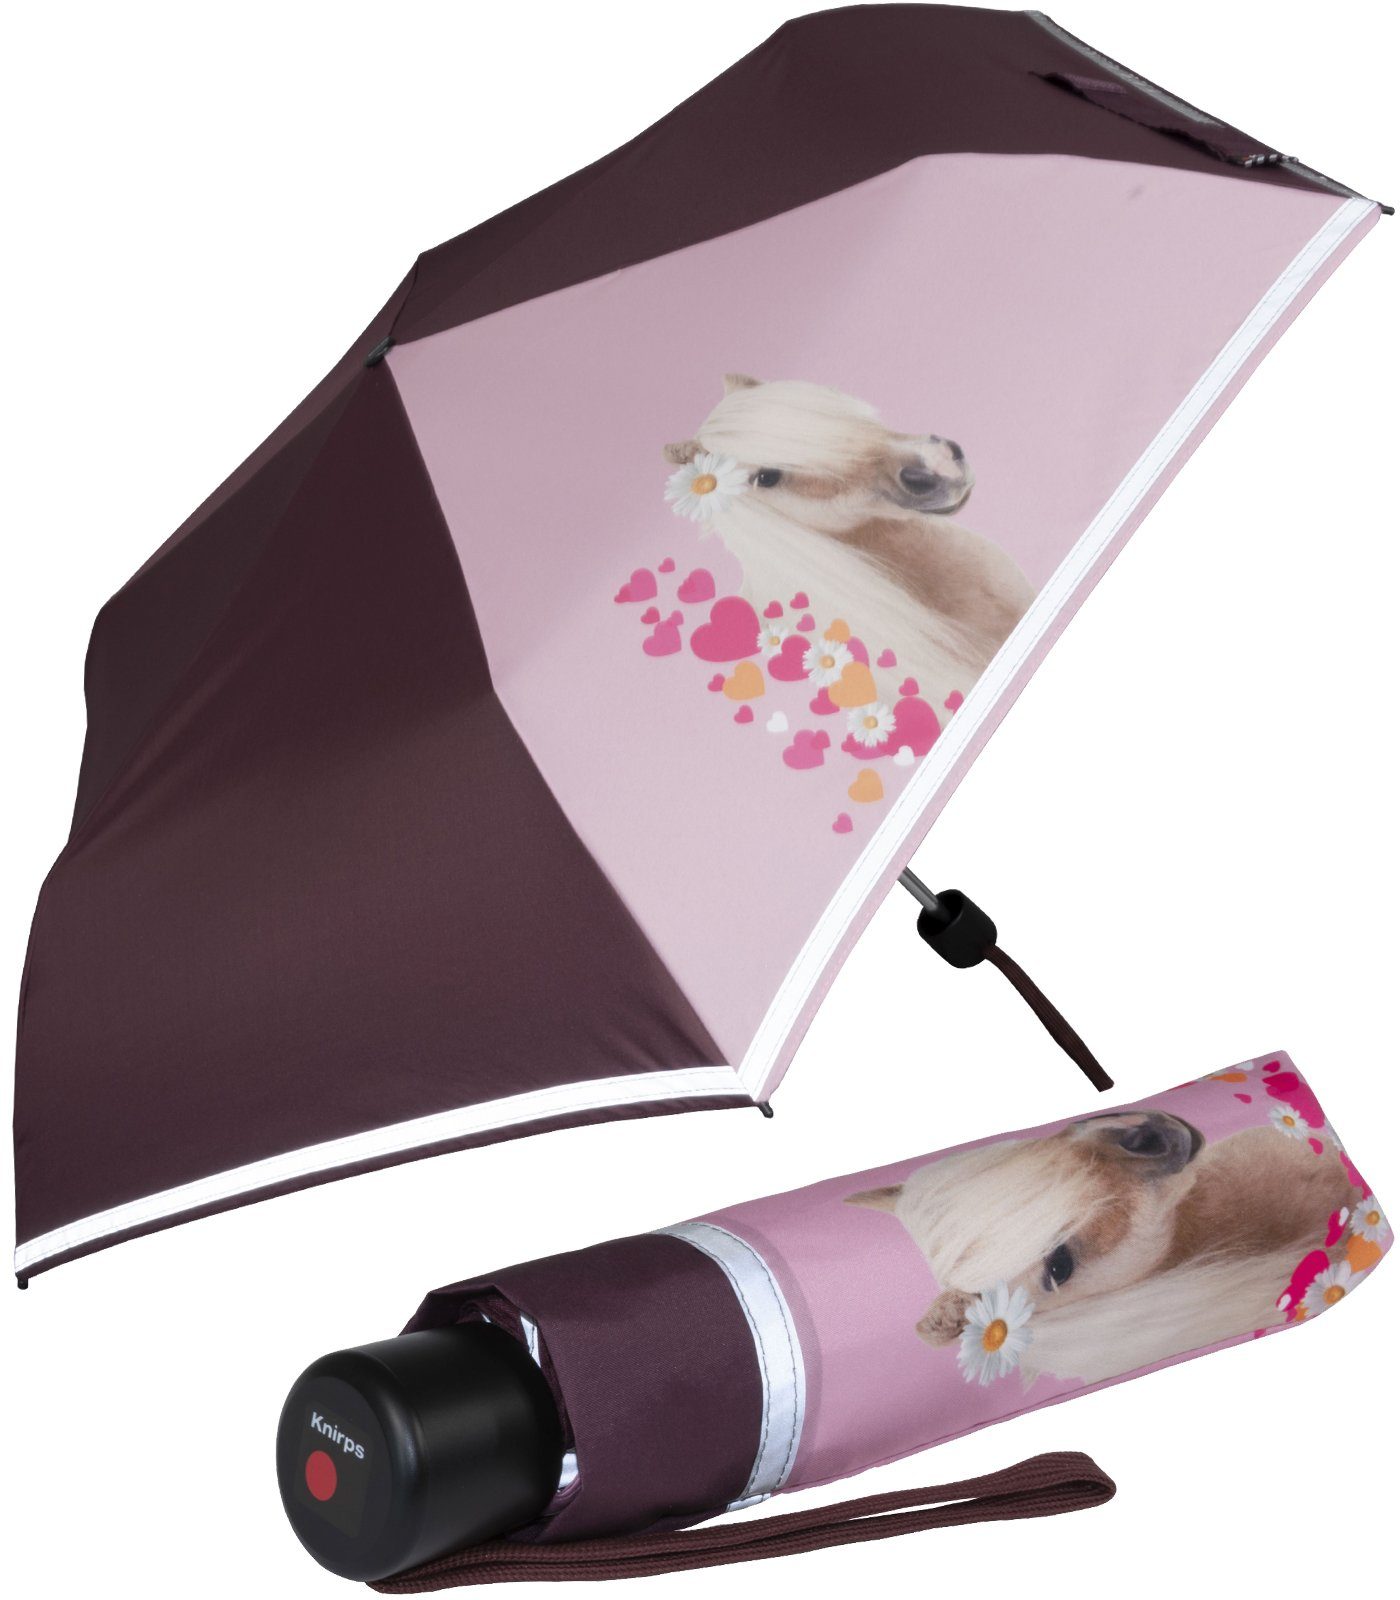 Pferde, Knirps® Schulweg, 4Kids dem Kinderschirm Sicherheit mit auf Taschenregenschirm reflective Reflexborte, Horselove